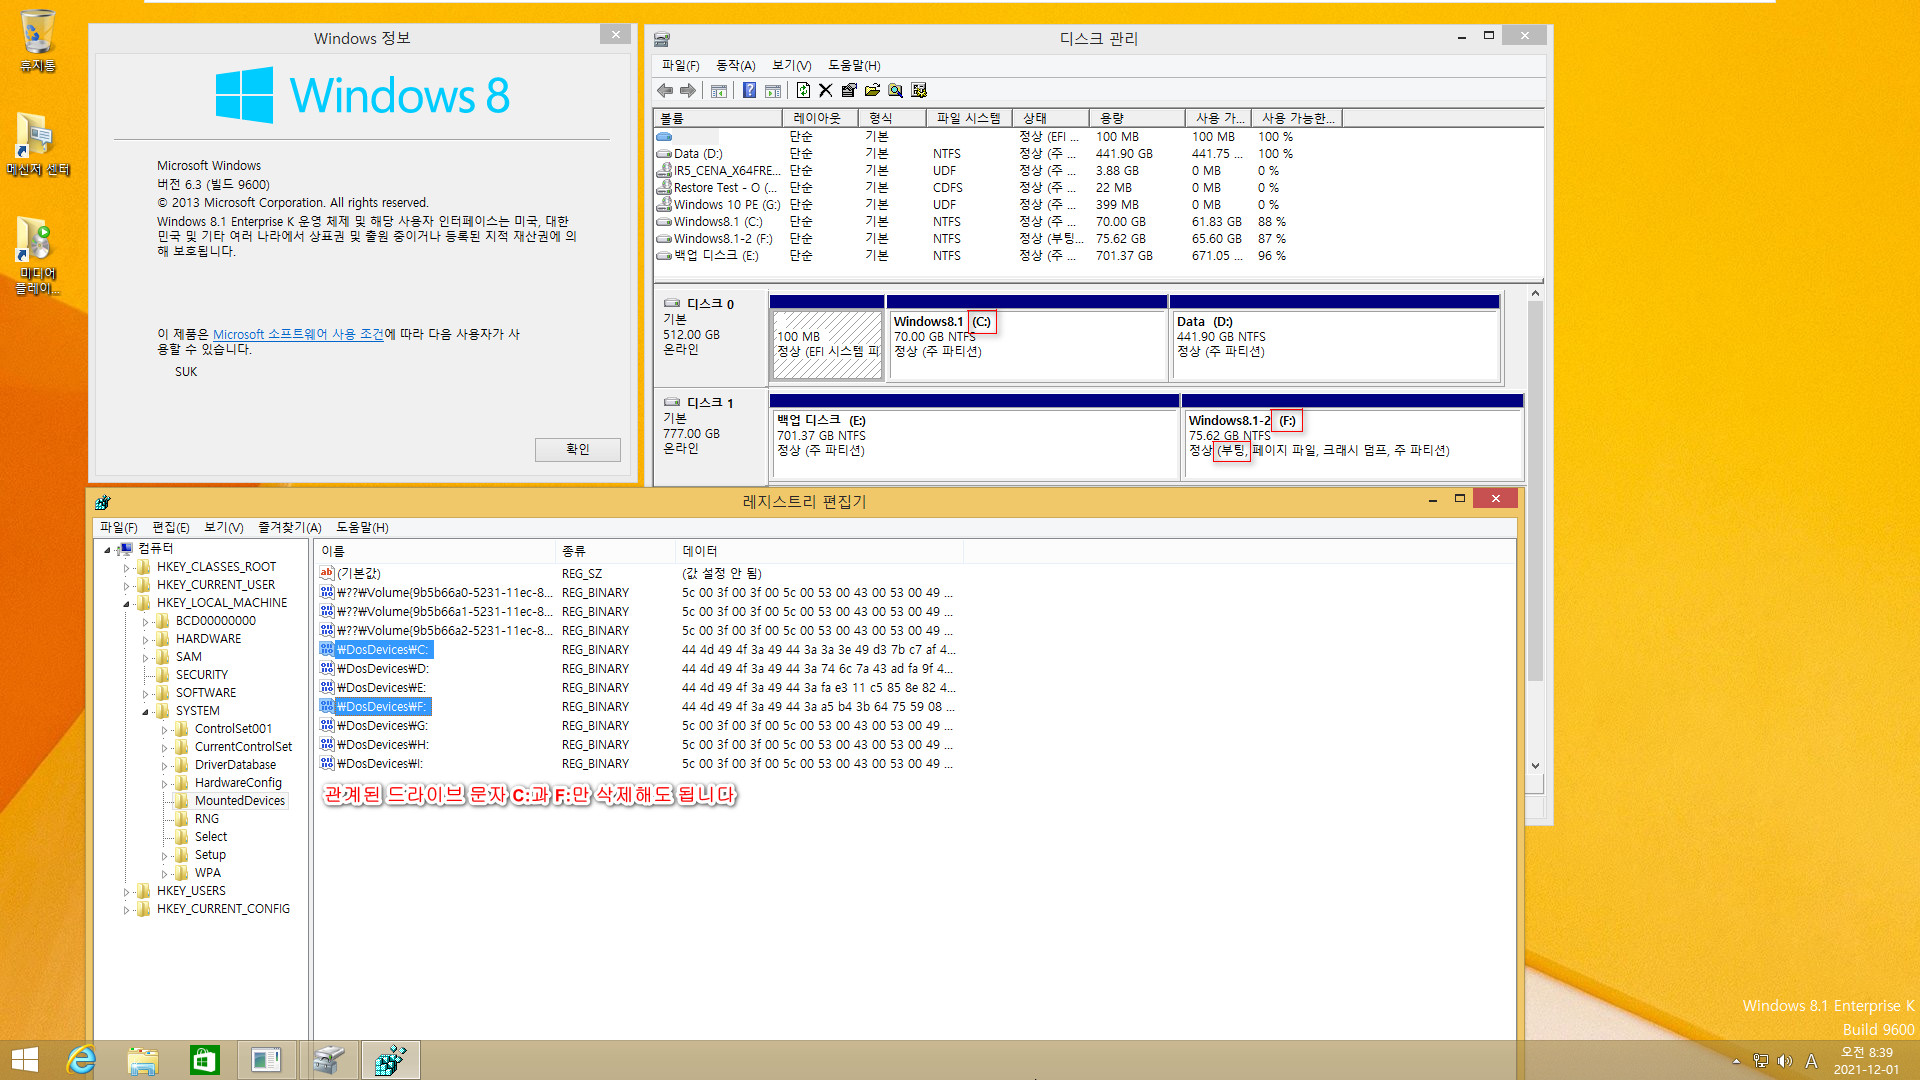 Windows 8.1은 여전히 같은 컴퓨터에서 다른 파티션에 복원하면 기존 윈도우와 복원한 윈도우 2개를 동시에 사용하는군요. 기존 C드라이브 문자만 삭제하면 정상 부팅됩니다 2021-12-01_083908.jpg